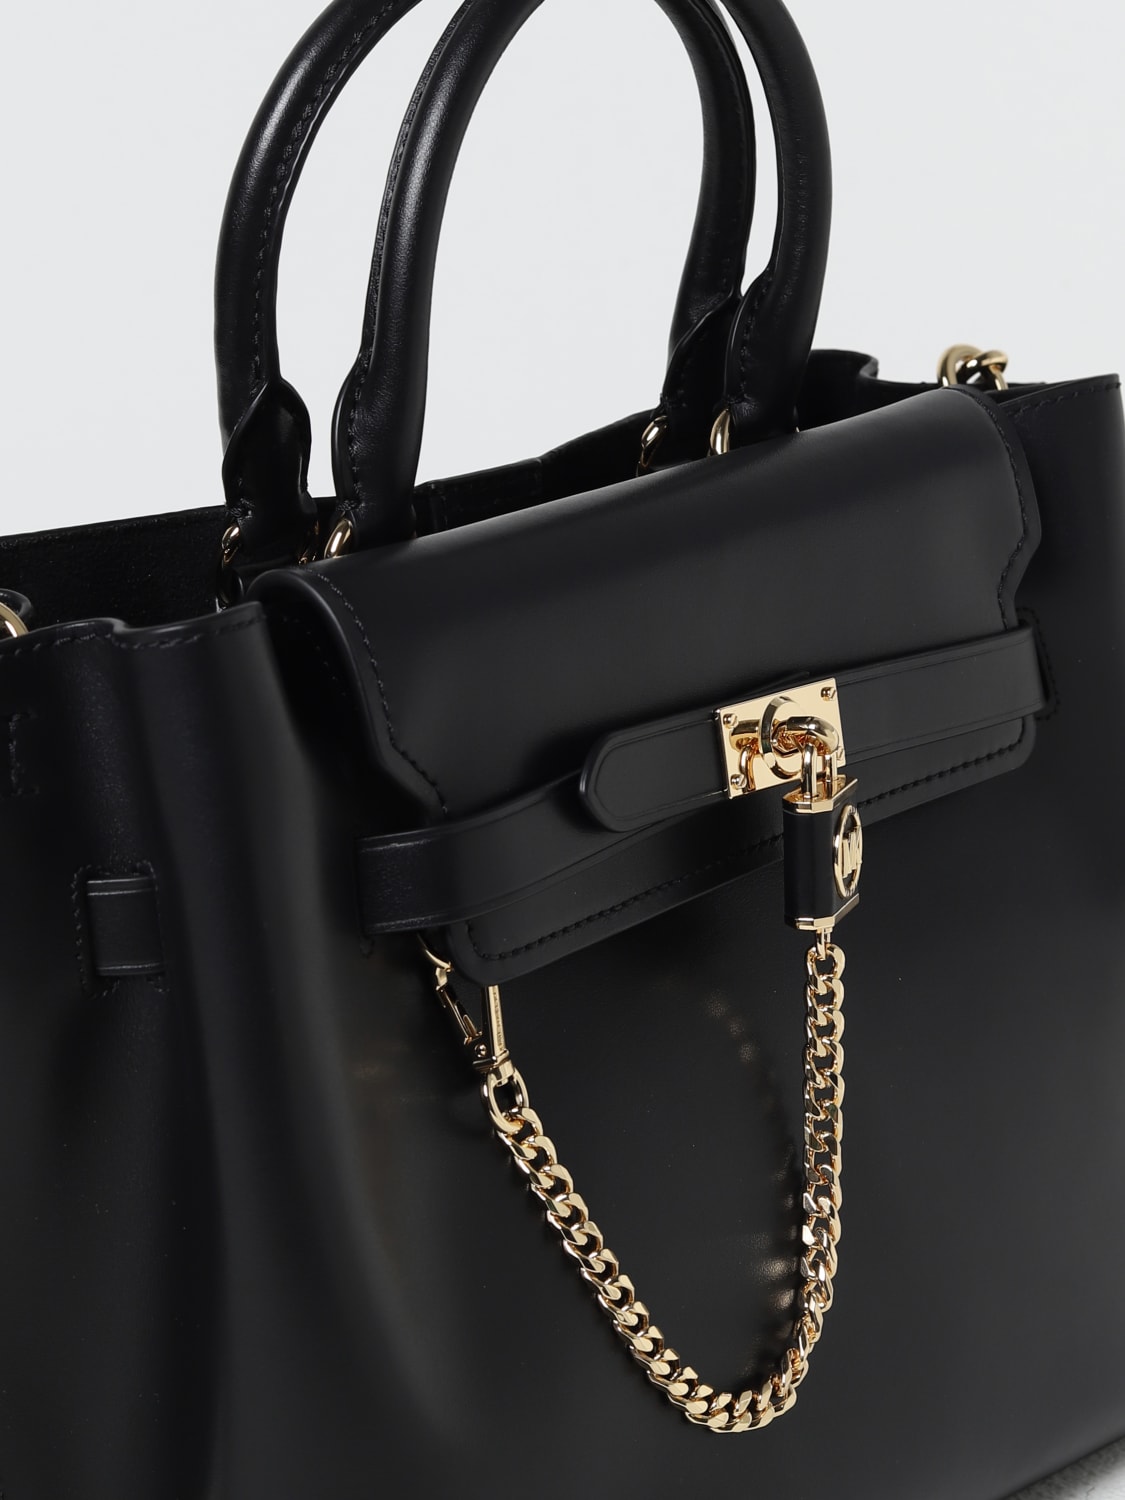 Michael Kors, Bags, Michael Kors Black Bag With Gold Chain